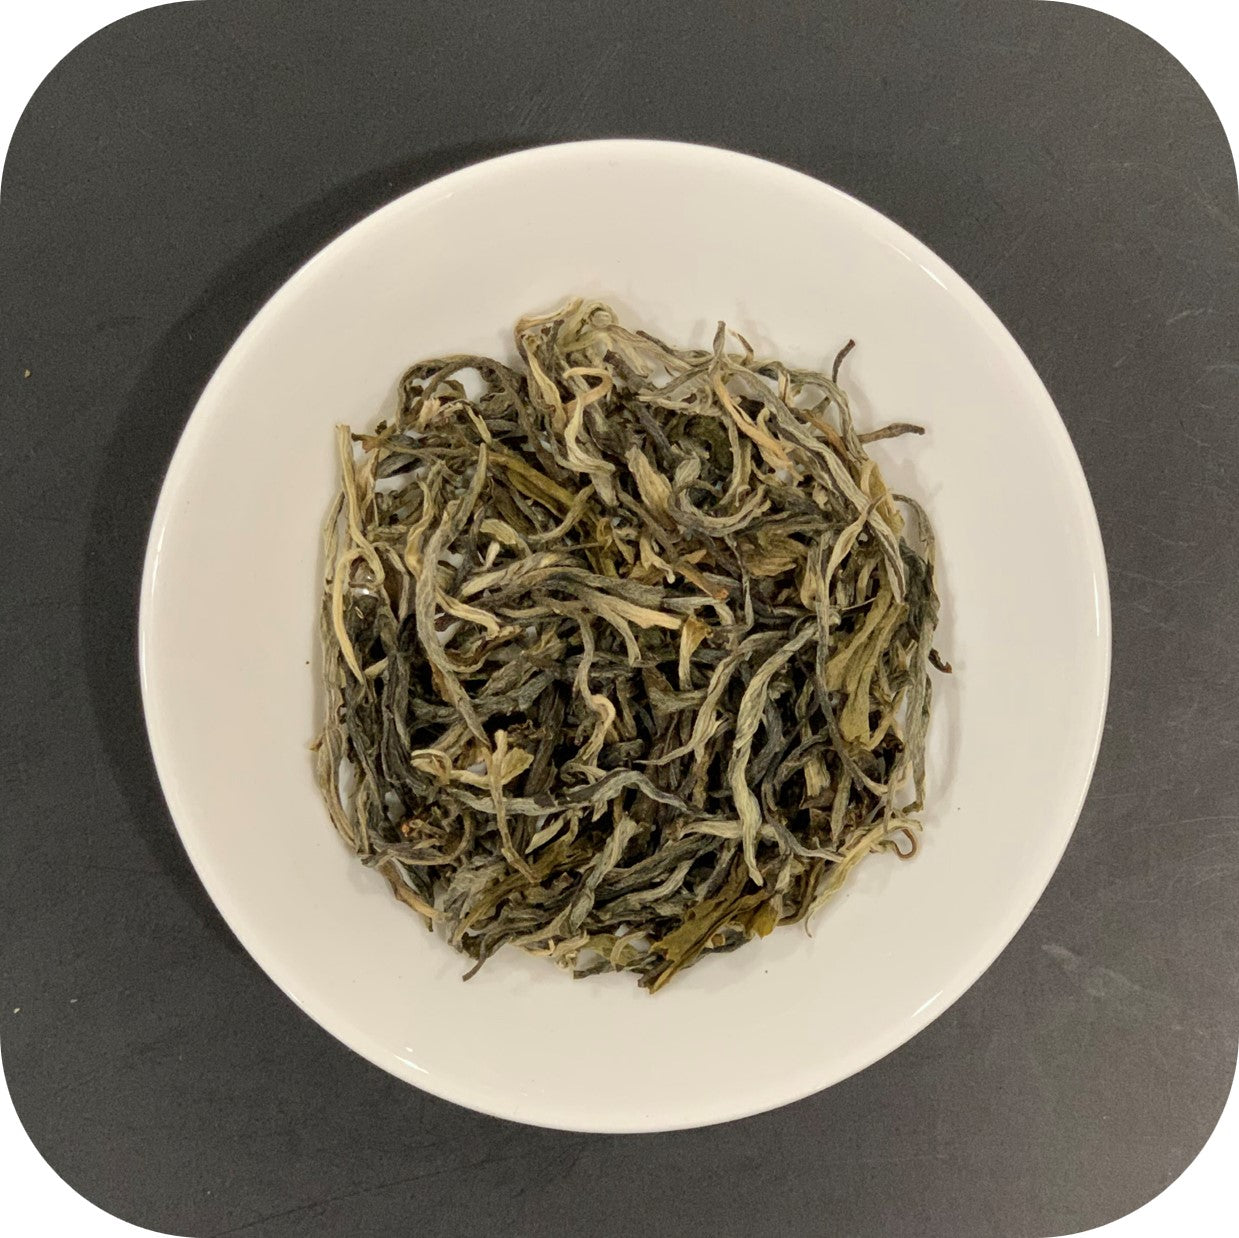 Yunnan Special White - White Tea